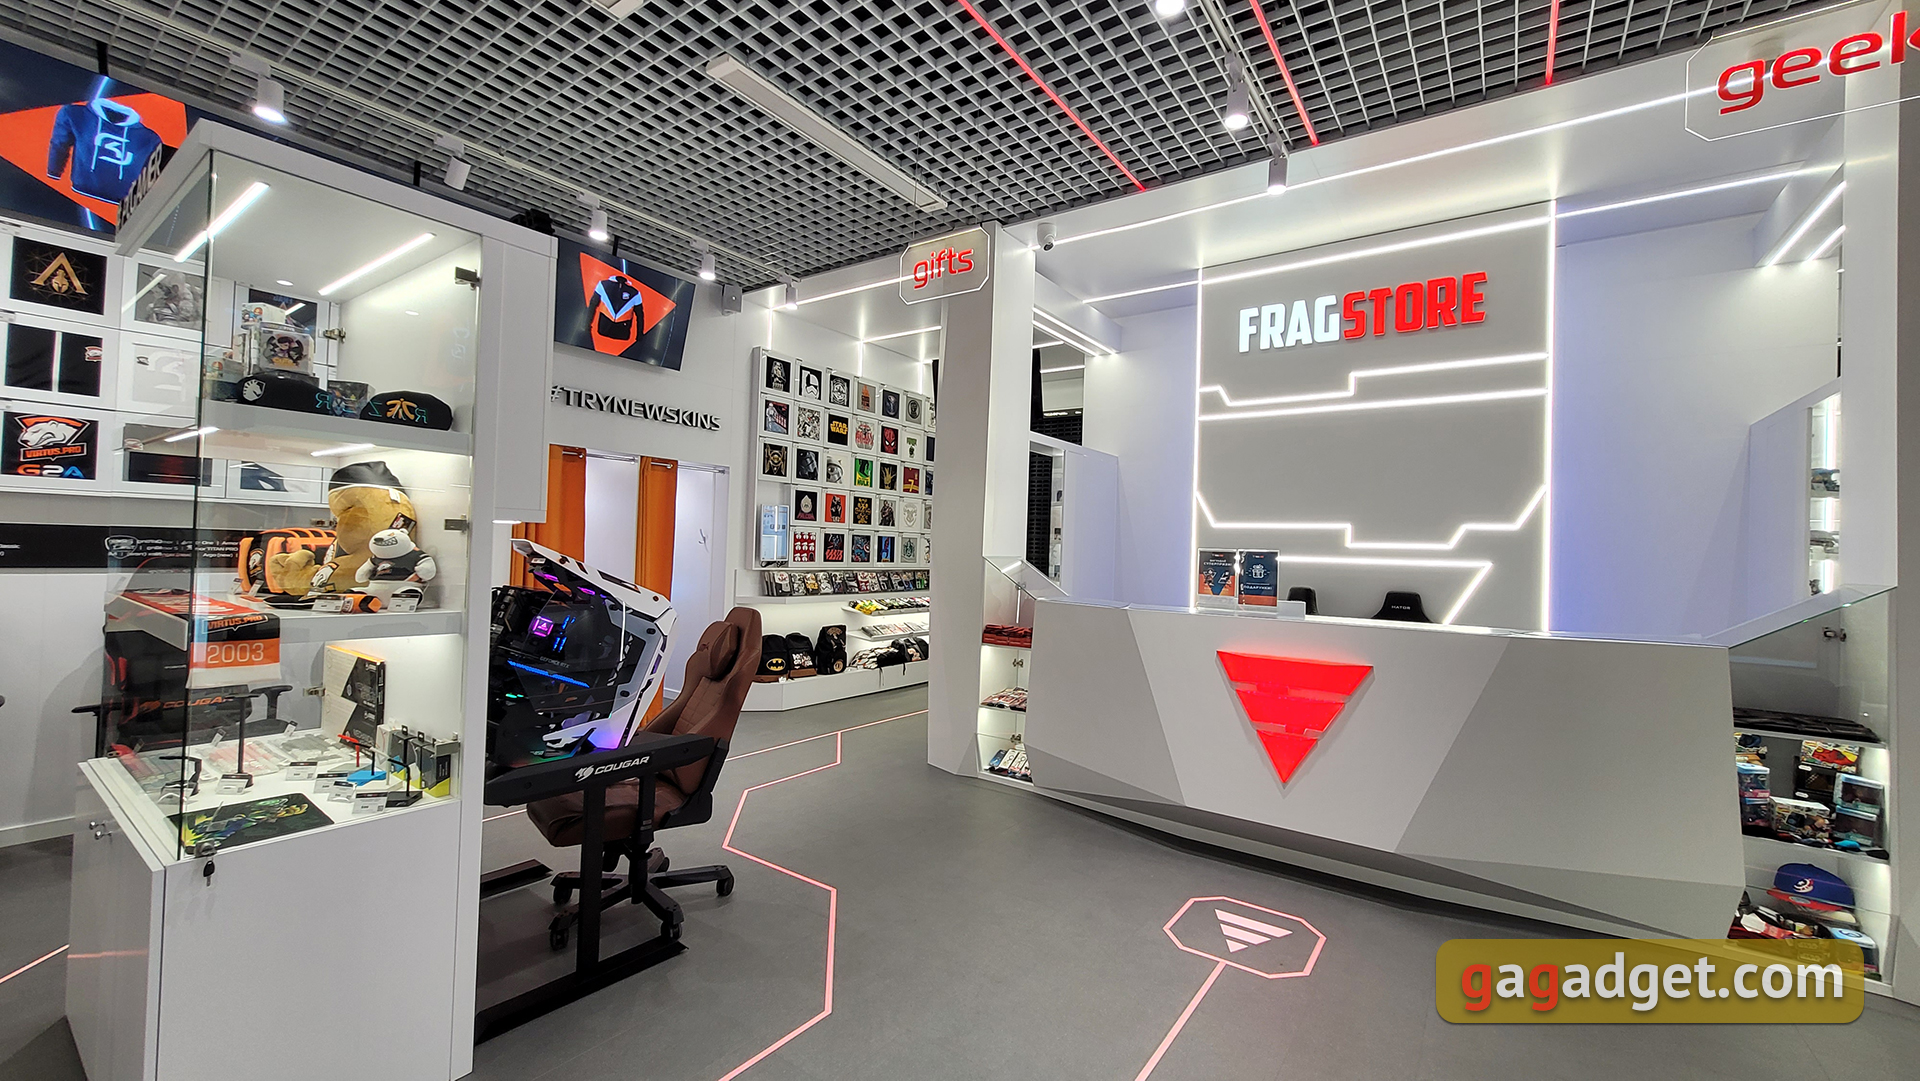 В Киеве открылась новая локация для геймеров: репортаж из магазина FragStore с мерчем, аксессуарами и подарками на любой вкус и кошелек